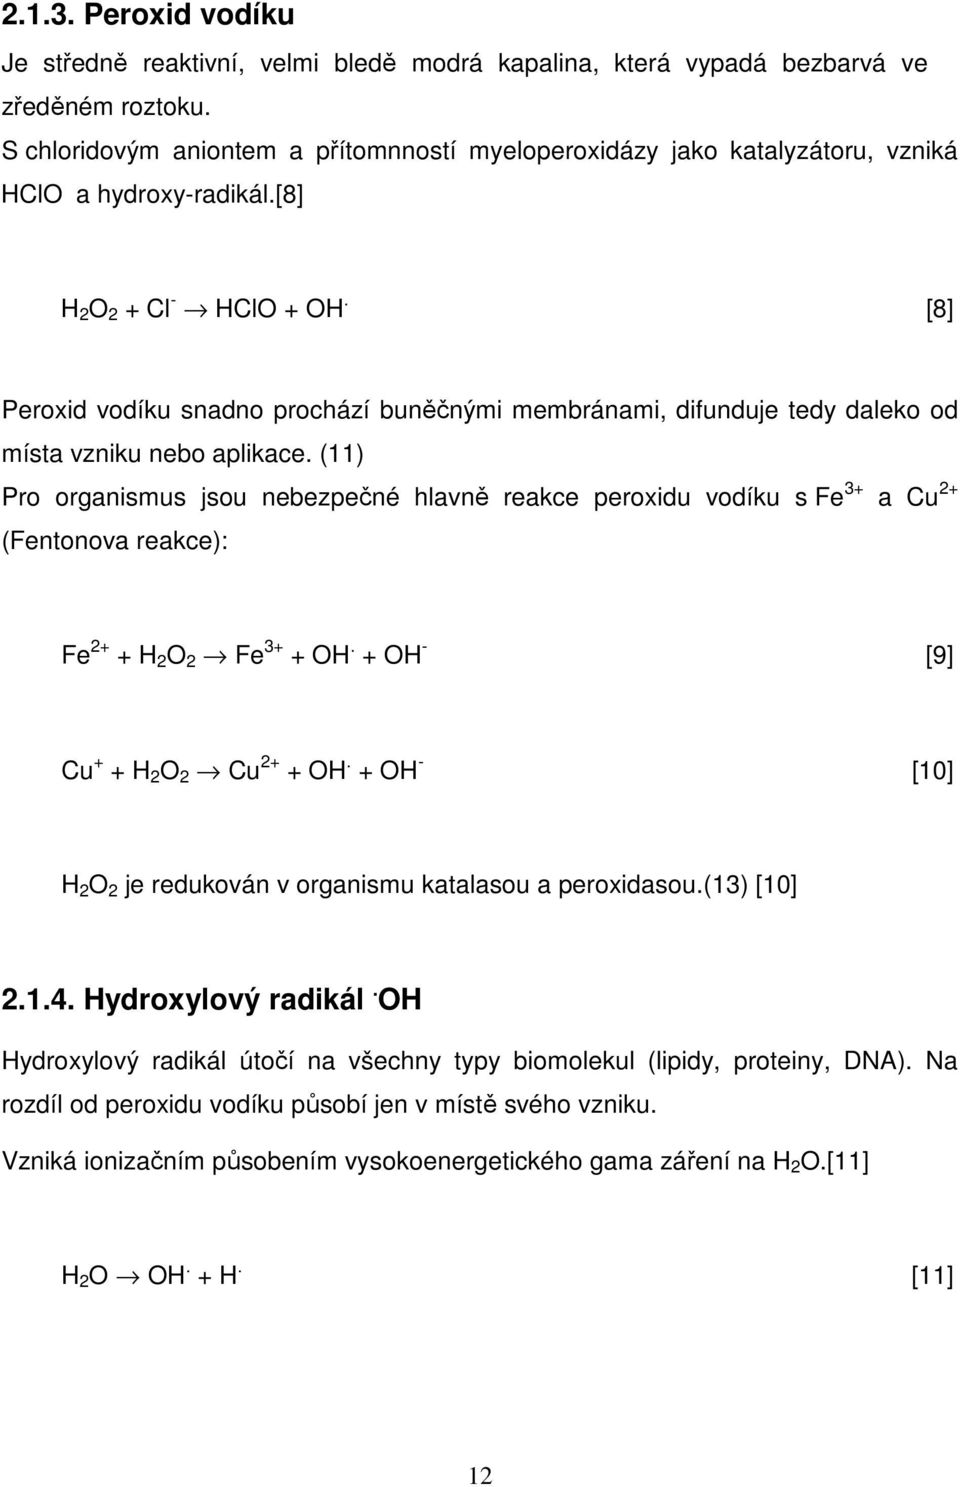 [8] Peroxid vodíku snadno prochází buněčnými membránami, difunduje tedy daleko od místa vzniku nebo aplikace.